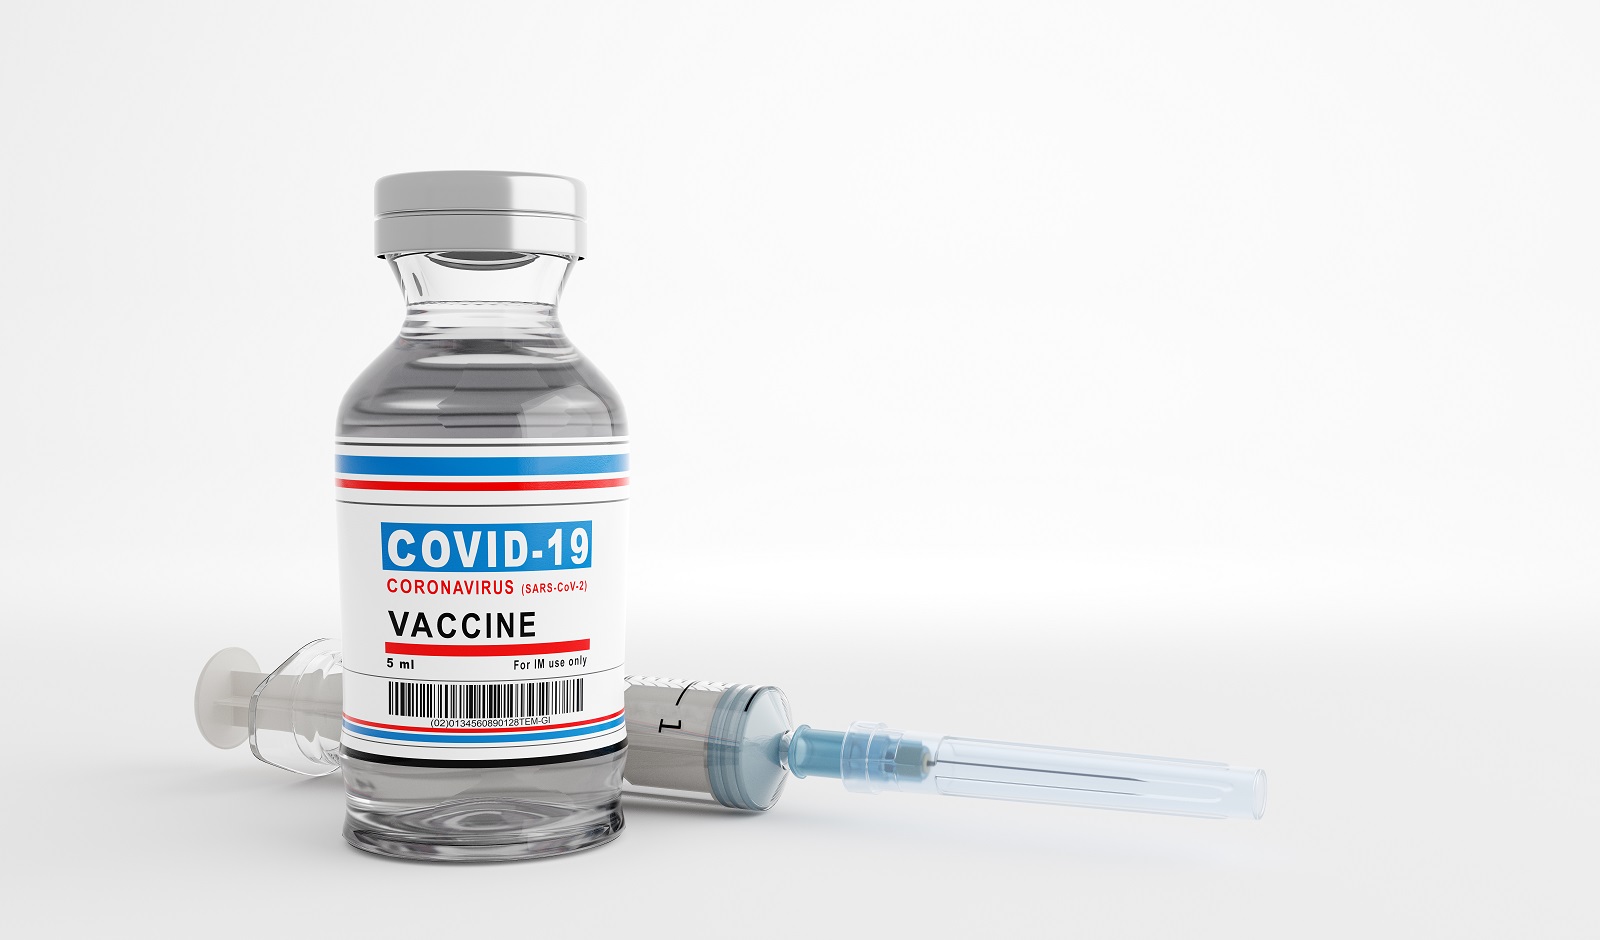 coronavirus covid 19 vaccine covid19 research QGFZDPK COVAX COVAX